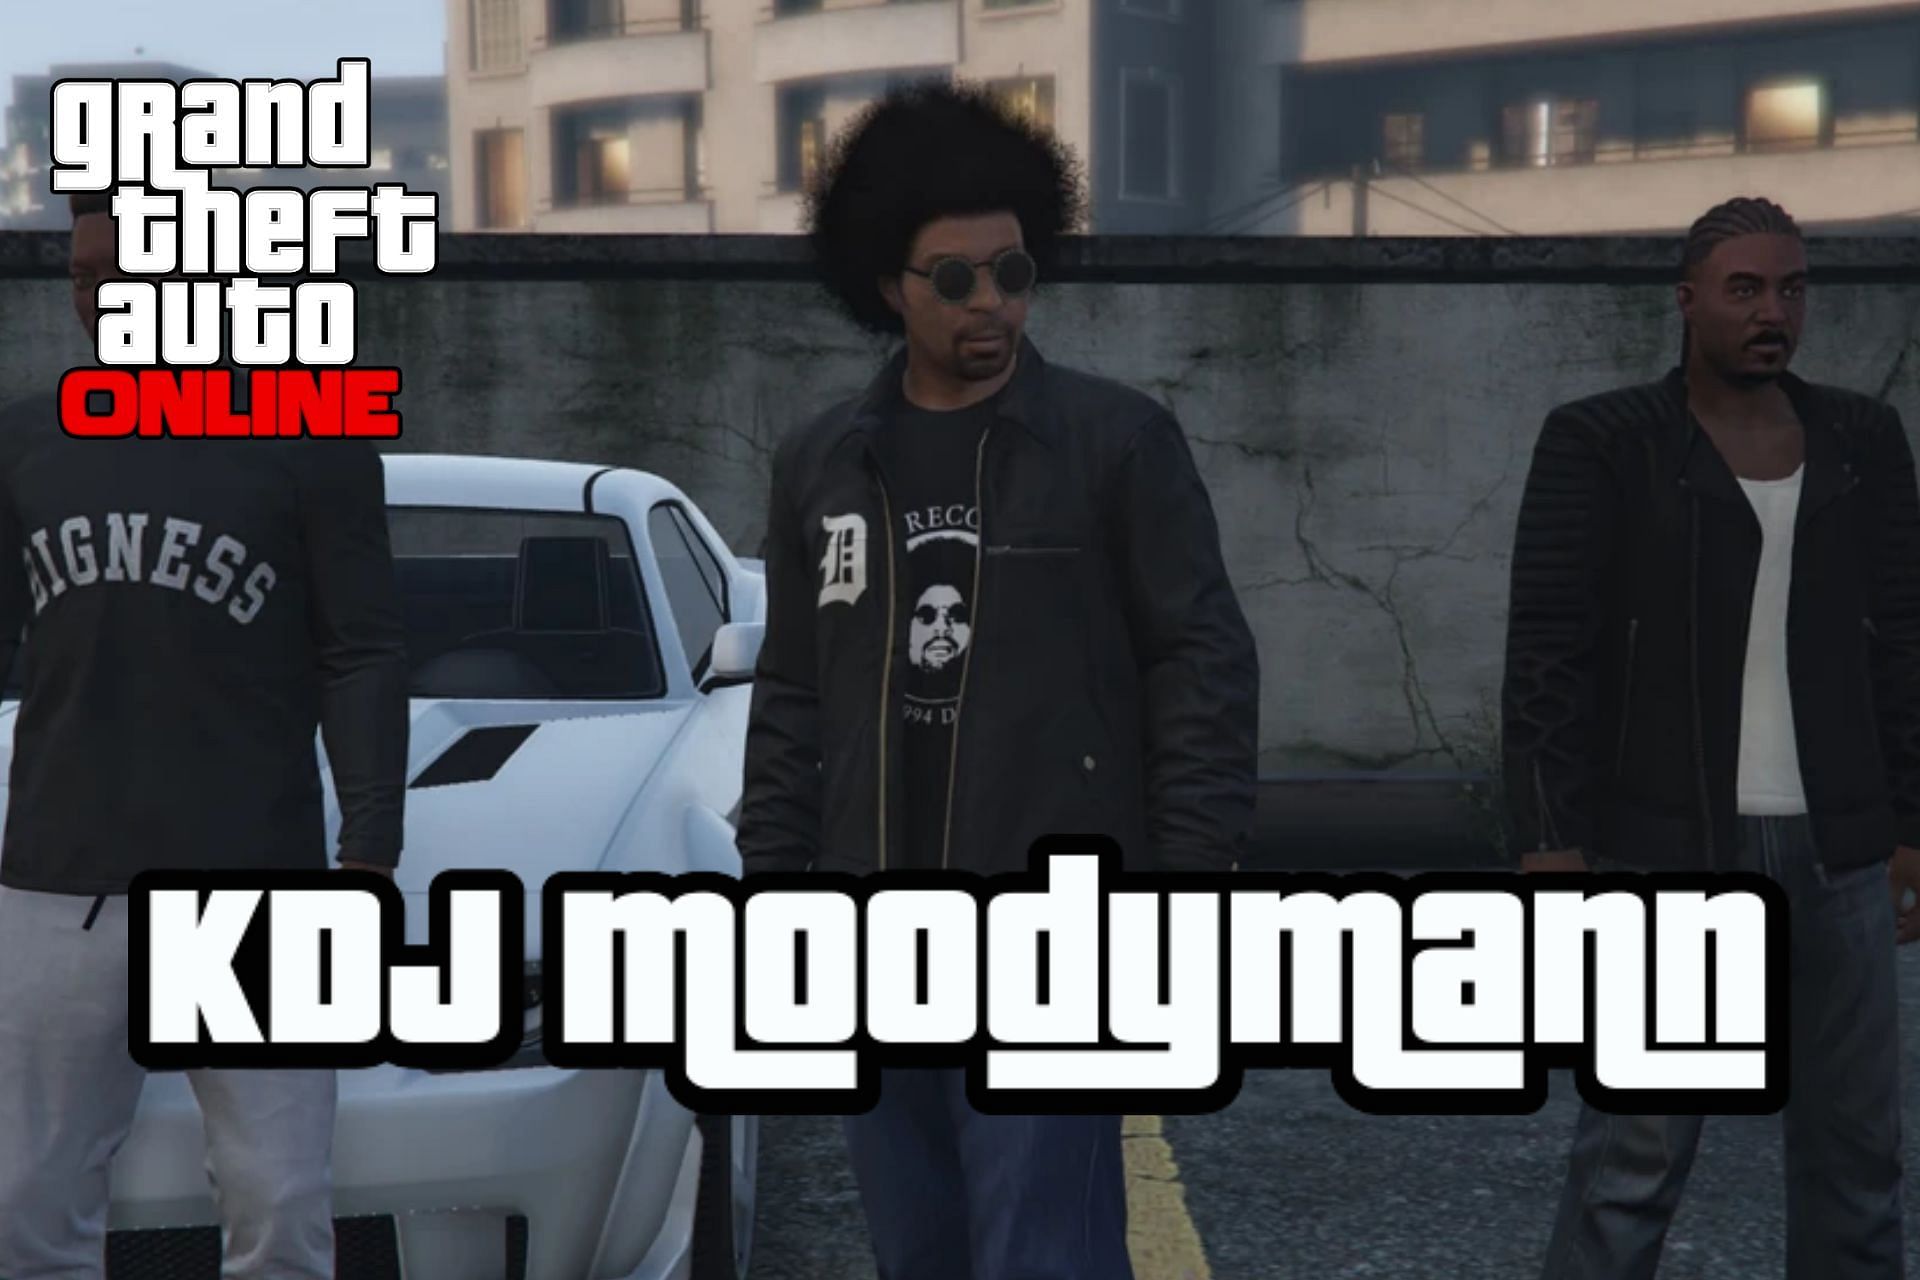 KDJ Moodymann plays a key role in GTA Online (Image via Rockstar Games)